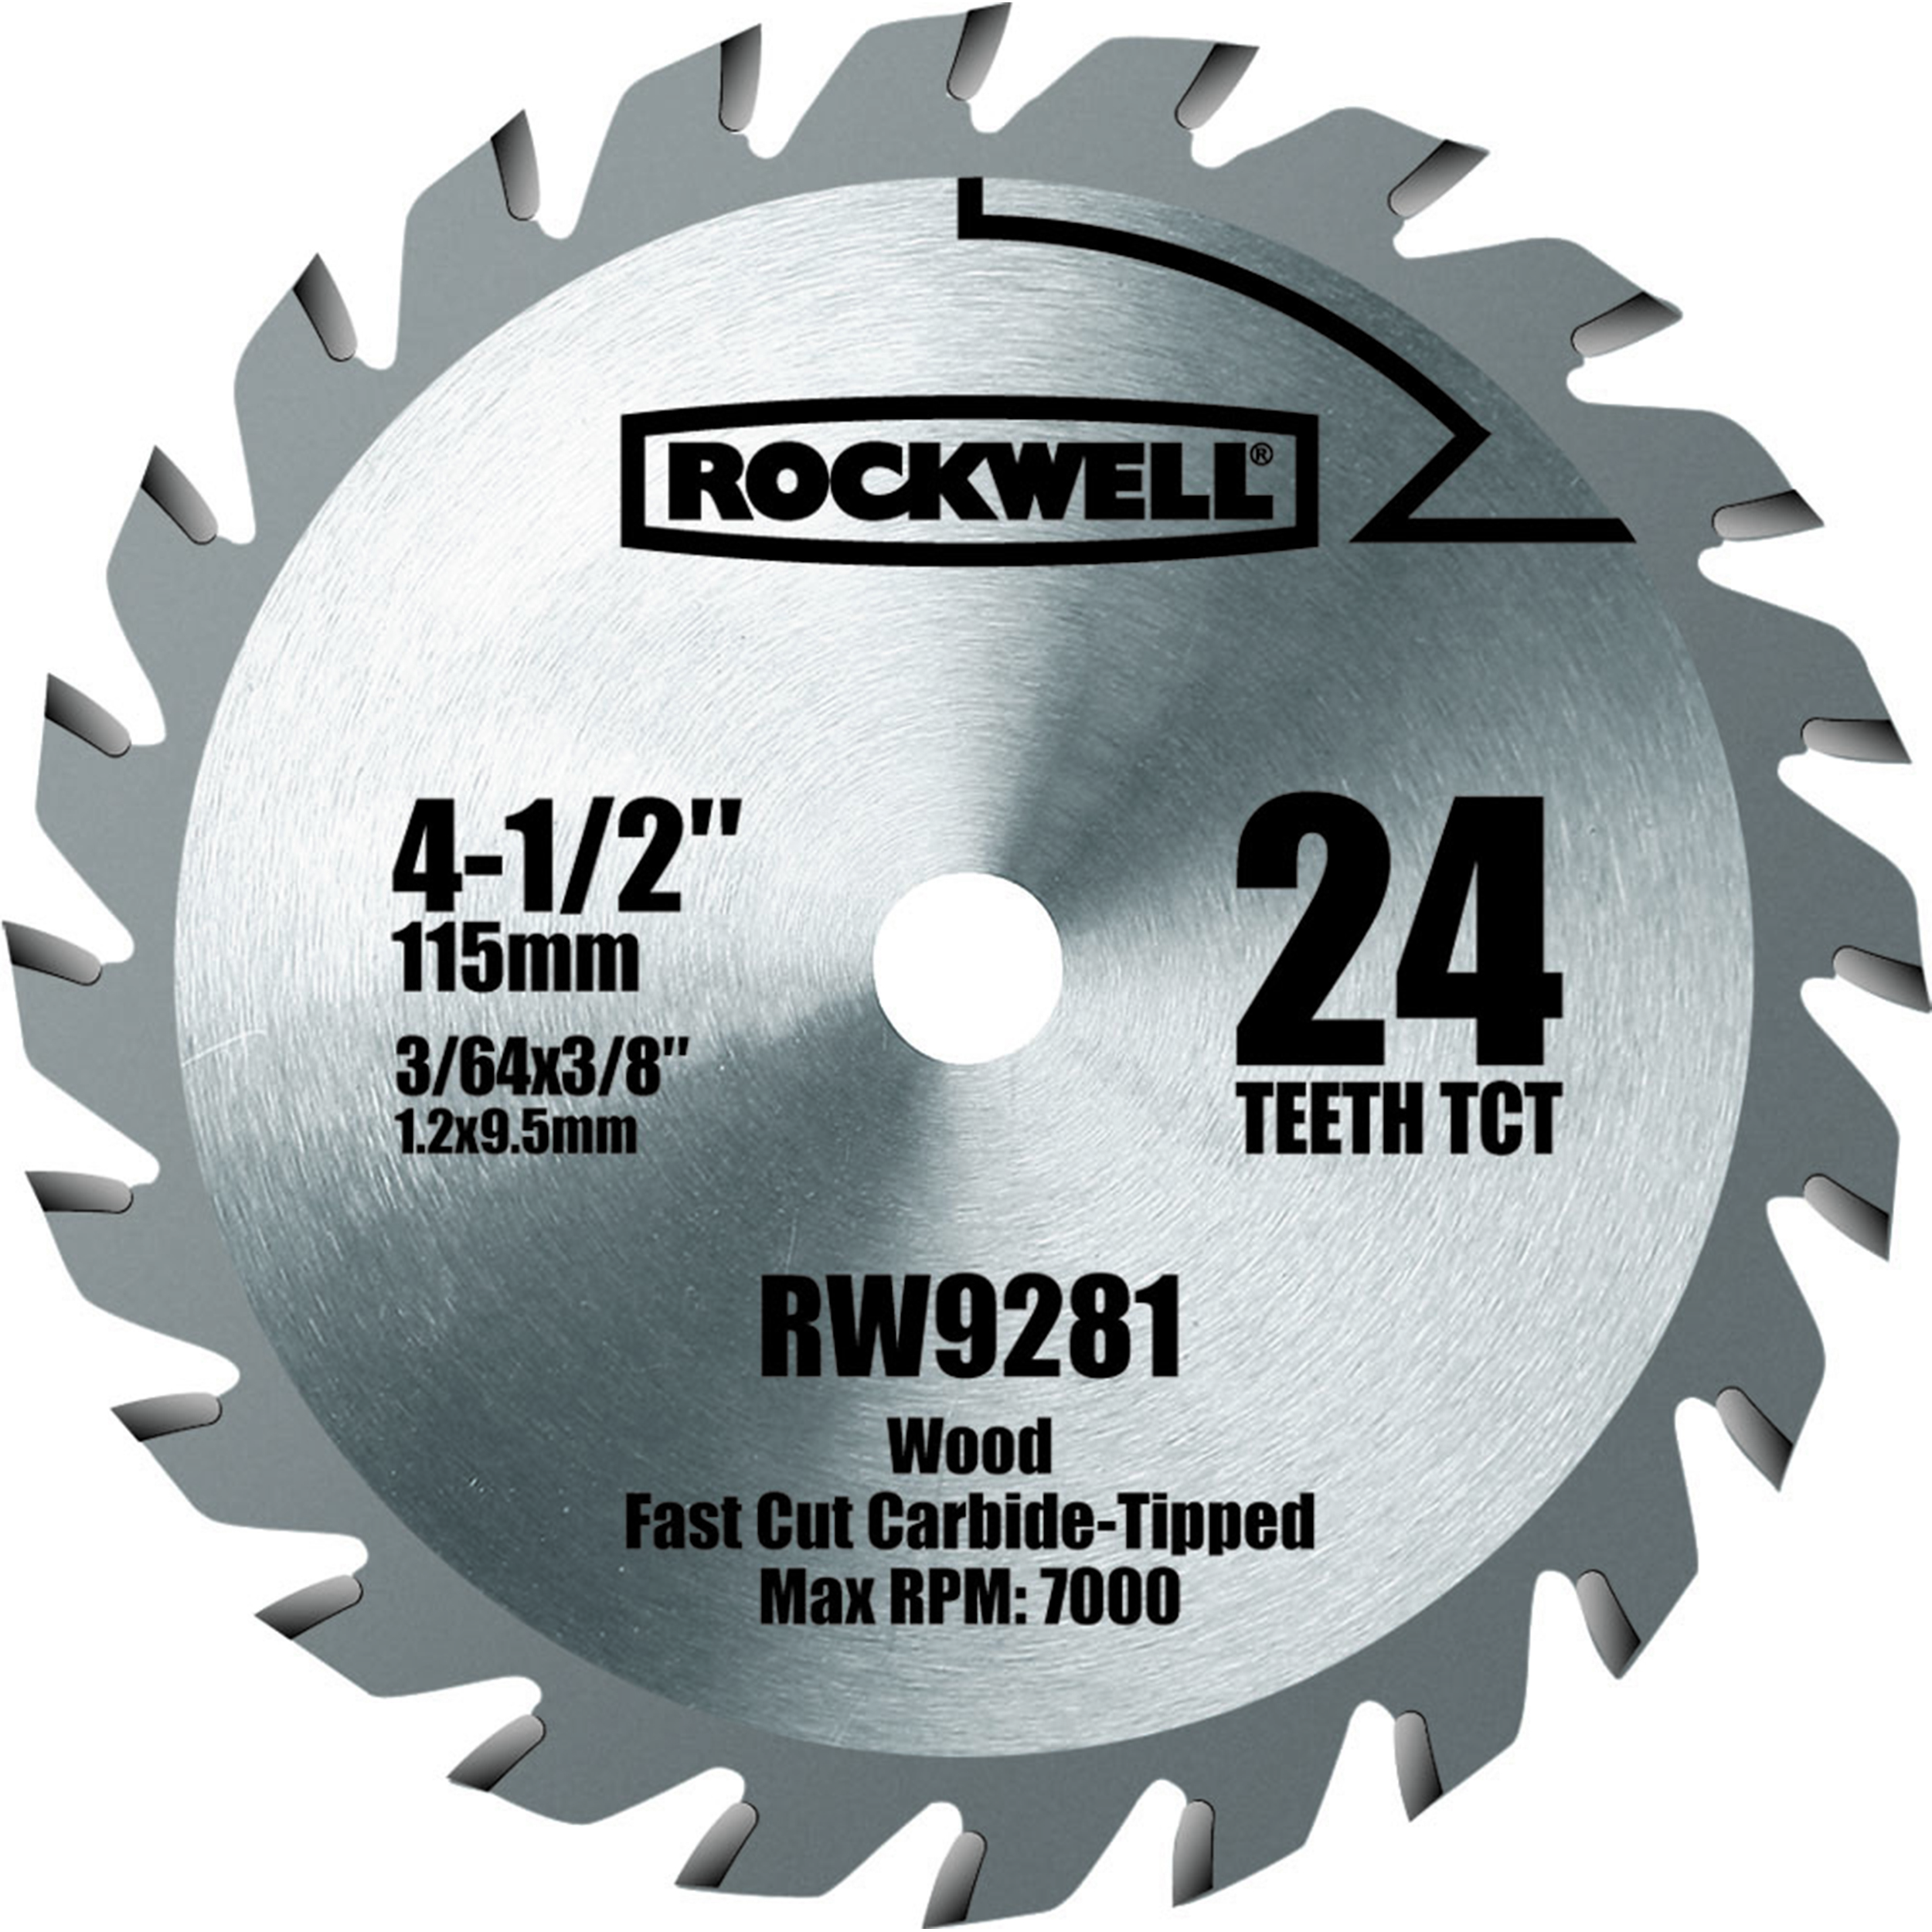 4-1/2" Compact Tct Circular Saw Blade, Model Rw9281